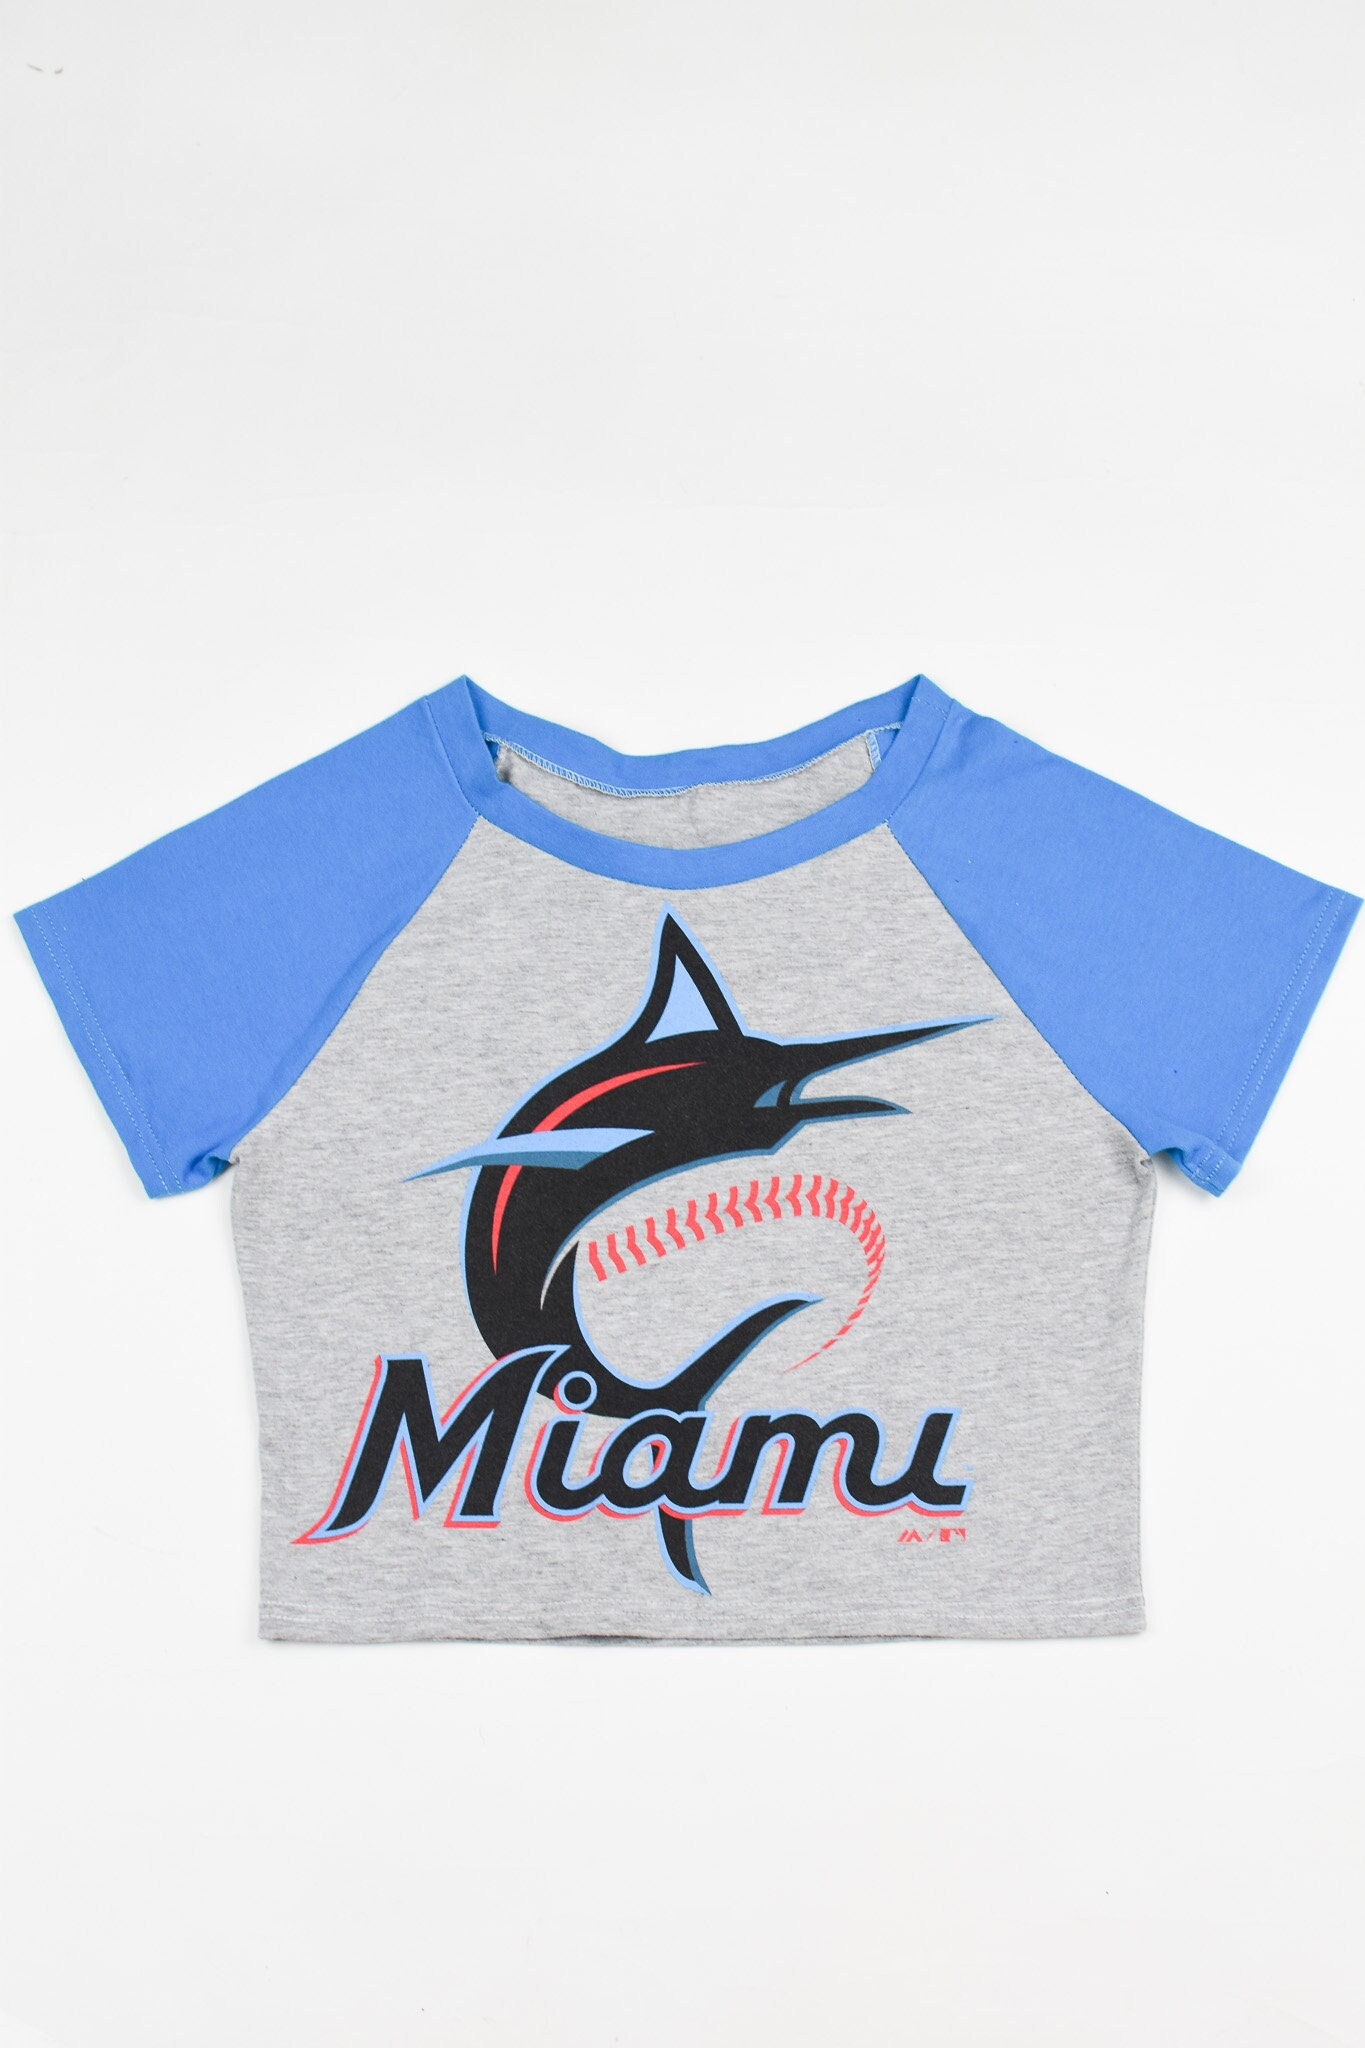 Miami Marlins Unicorn Dabbing Baseball Sports Shirts Women – Alottee